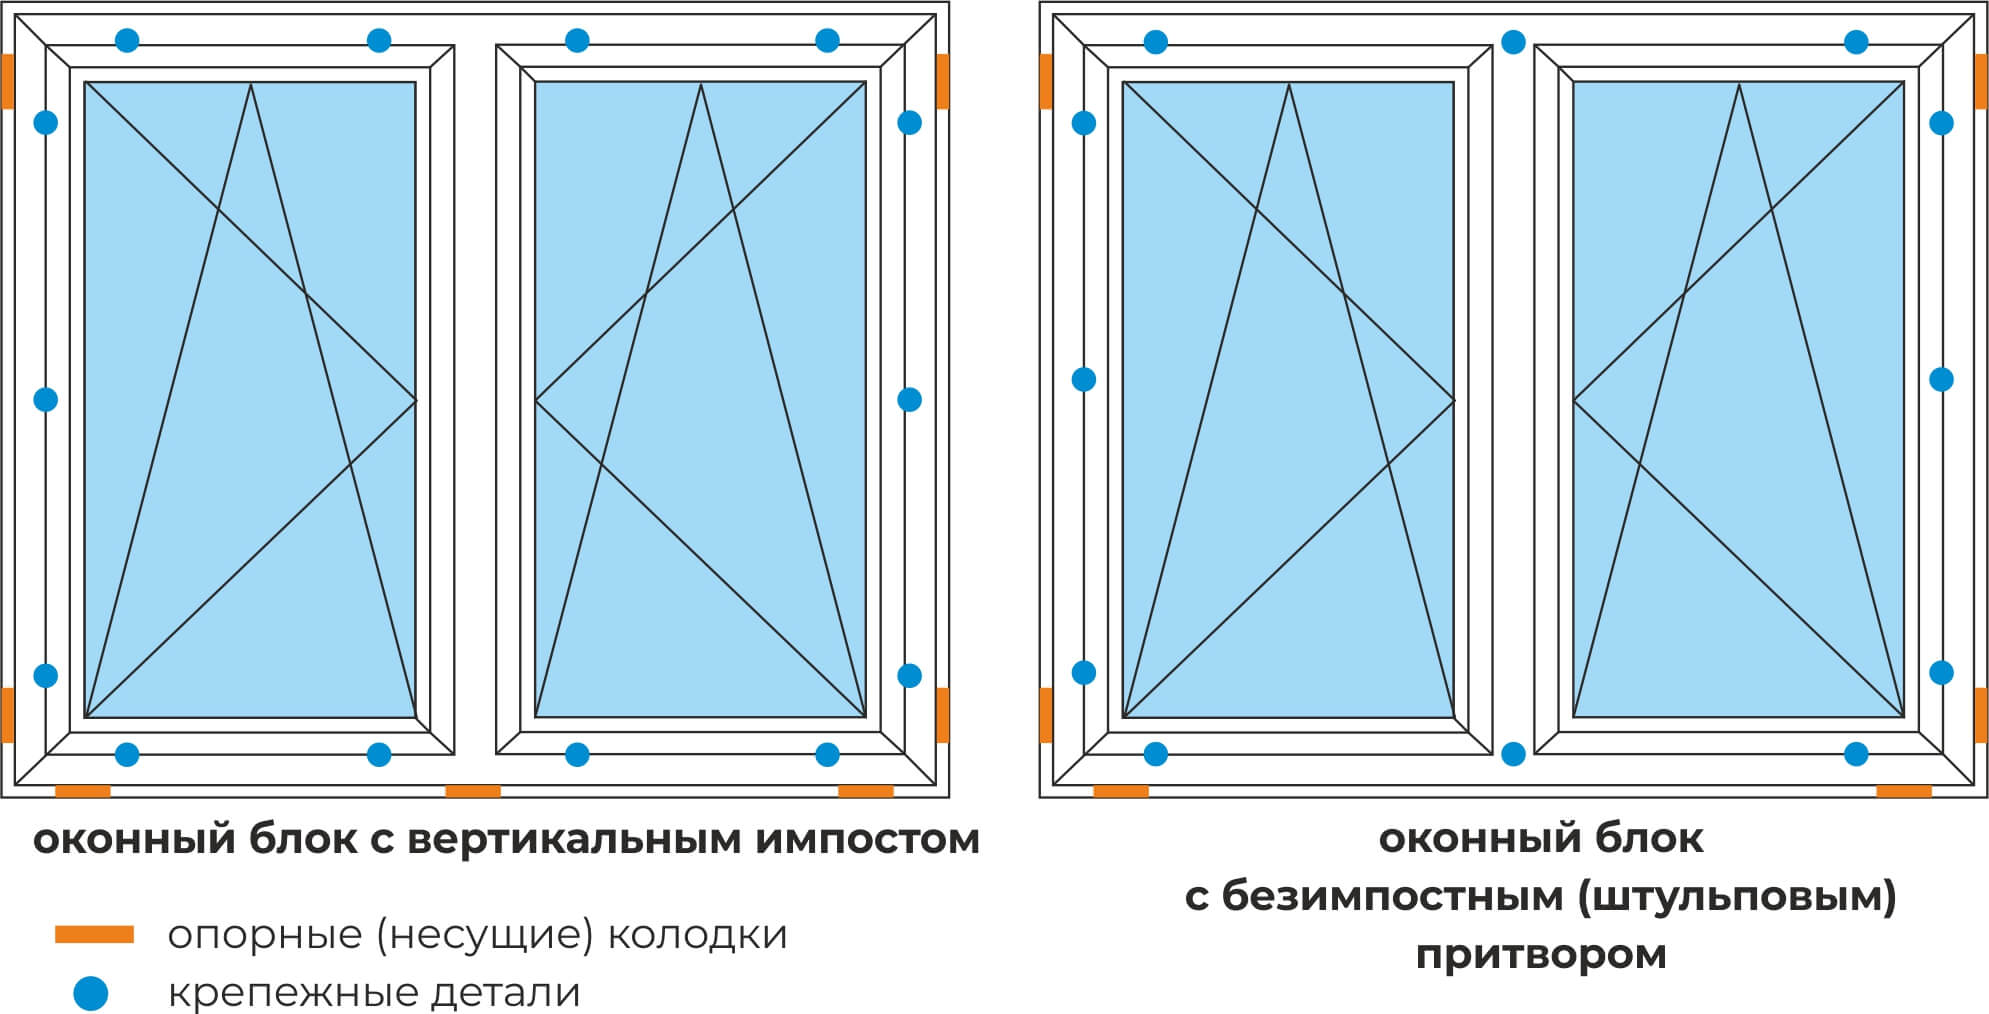 Схема расположения дистанционных подложек